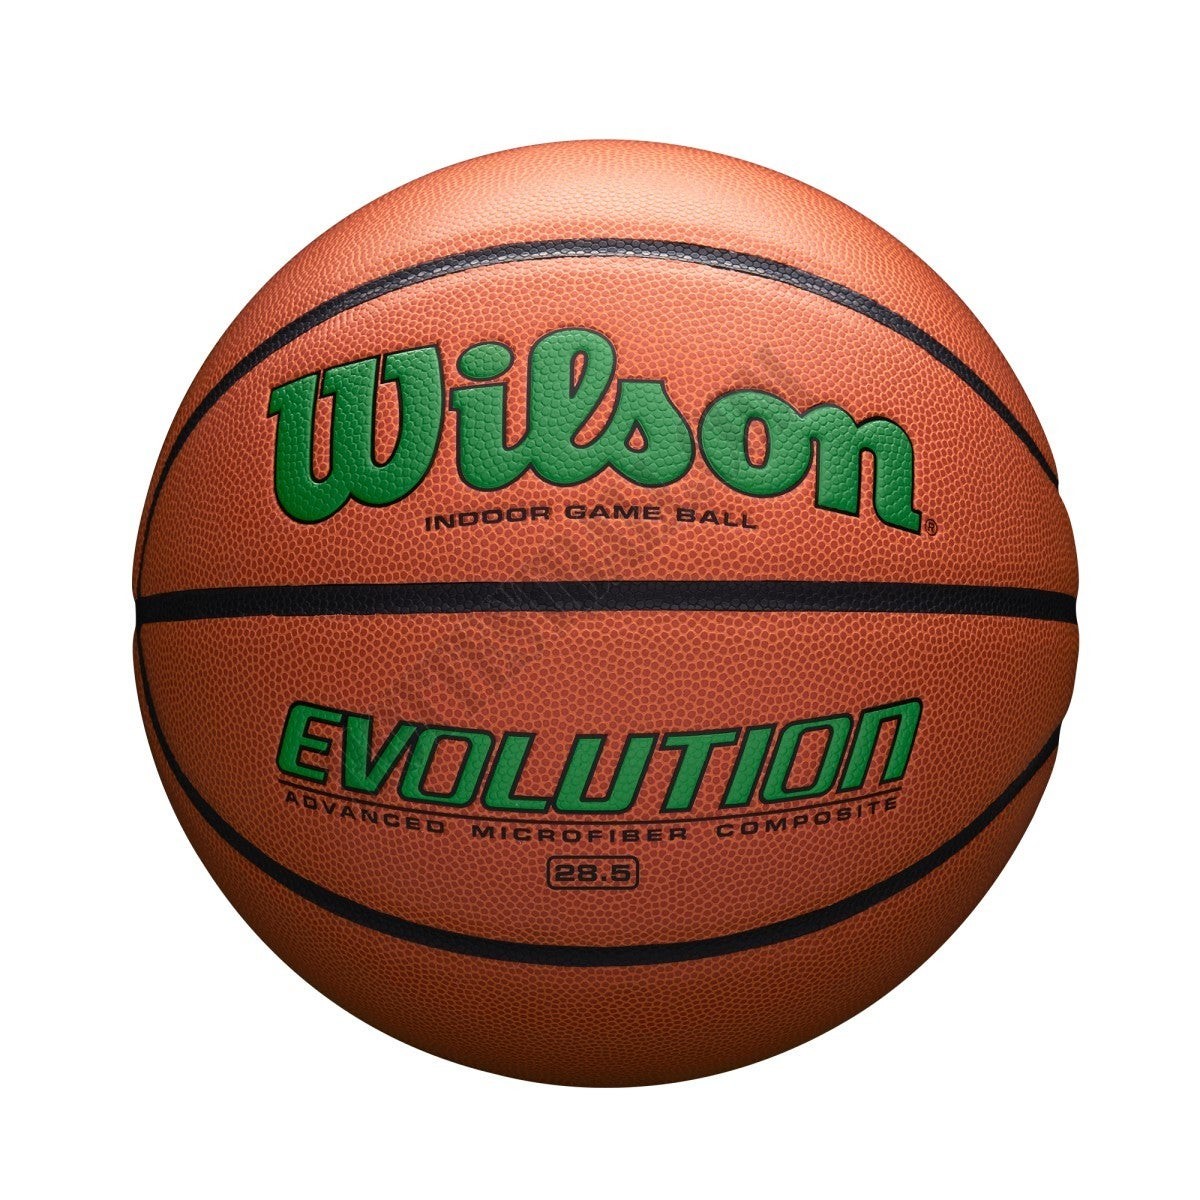 Evolution Game Basketball - Green - Wilson Discount Store - Evolution Game Basketball - Green - Wilson Discount Store